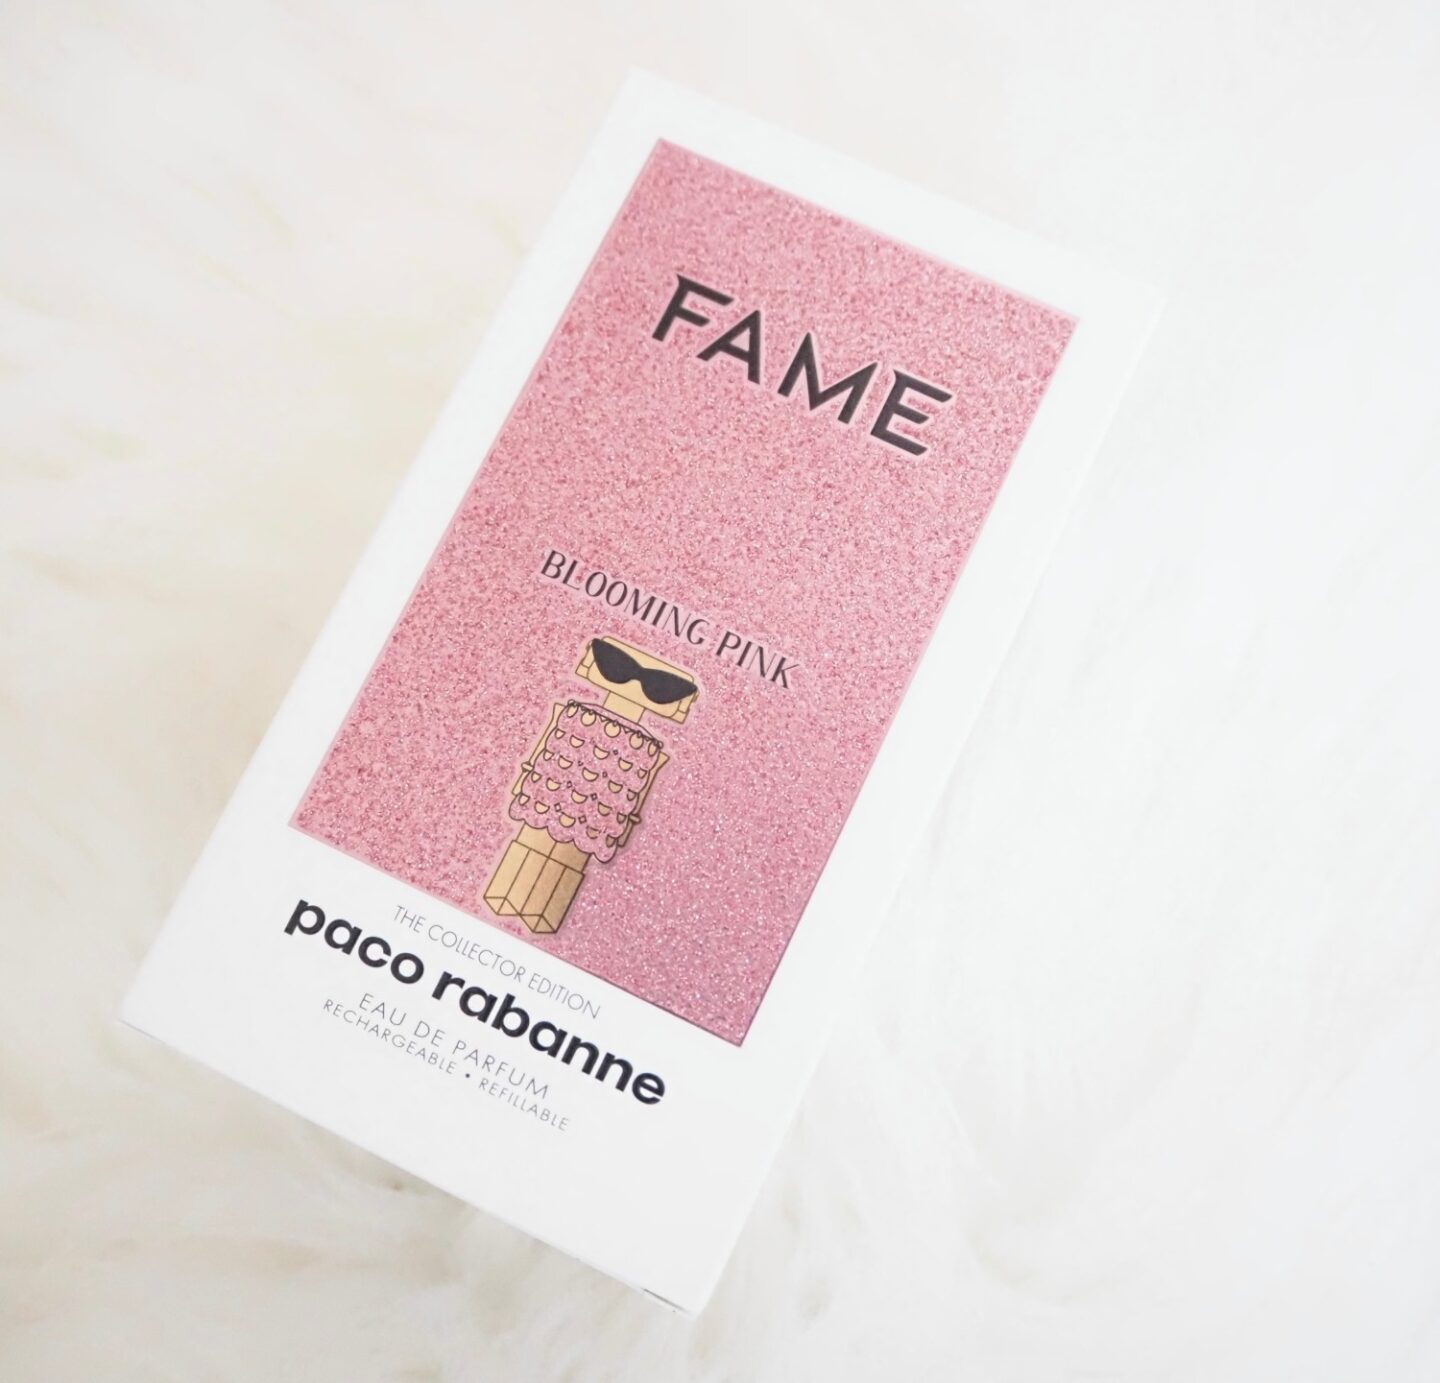 Fame Eau de Parfum Refill - Rabanne